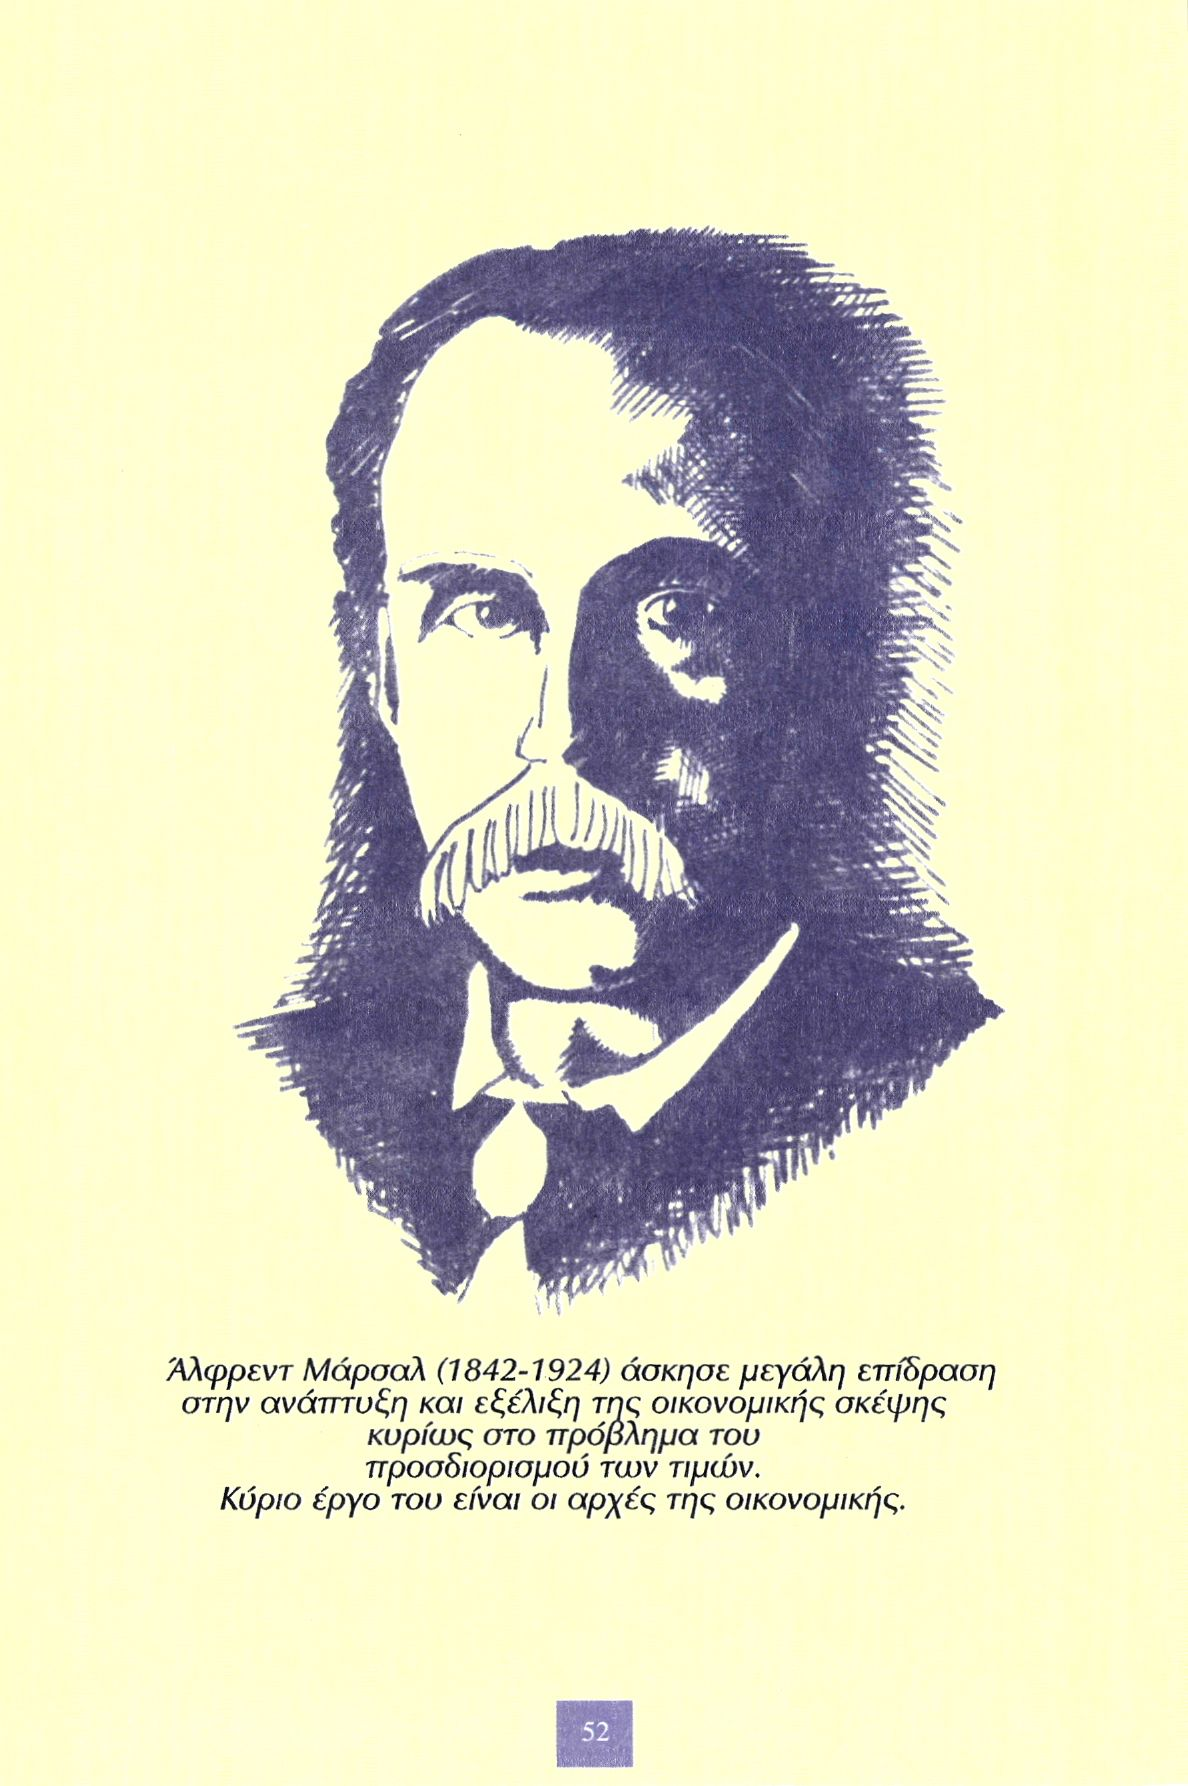 Άλφρεντ Μάρσαλ (1842-1924) άσκησε μεγάλη επίδραση στην ανάπτυξη και εξέλιξη της οικονομικής